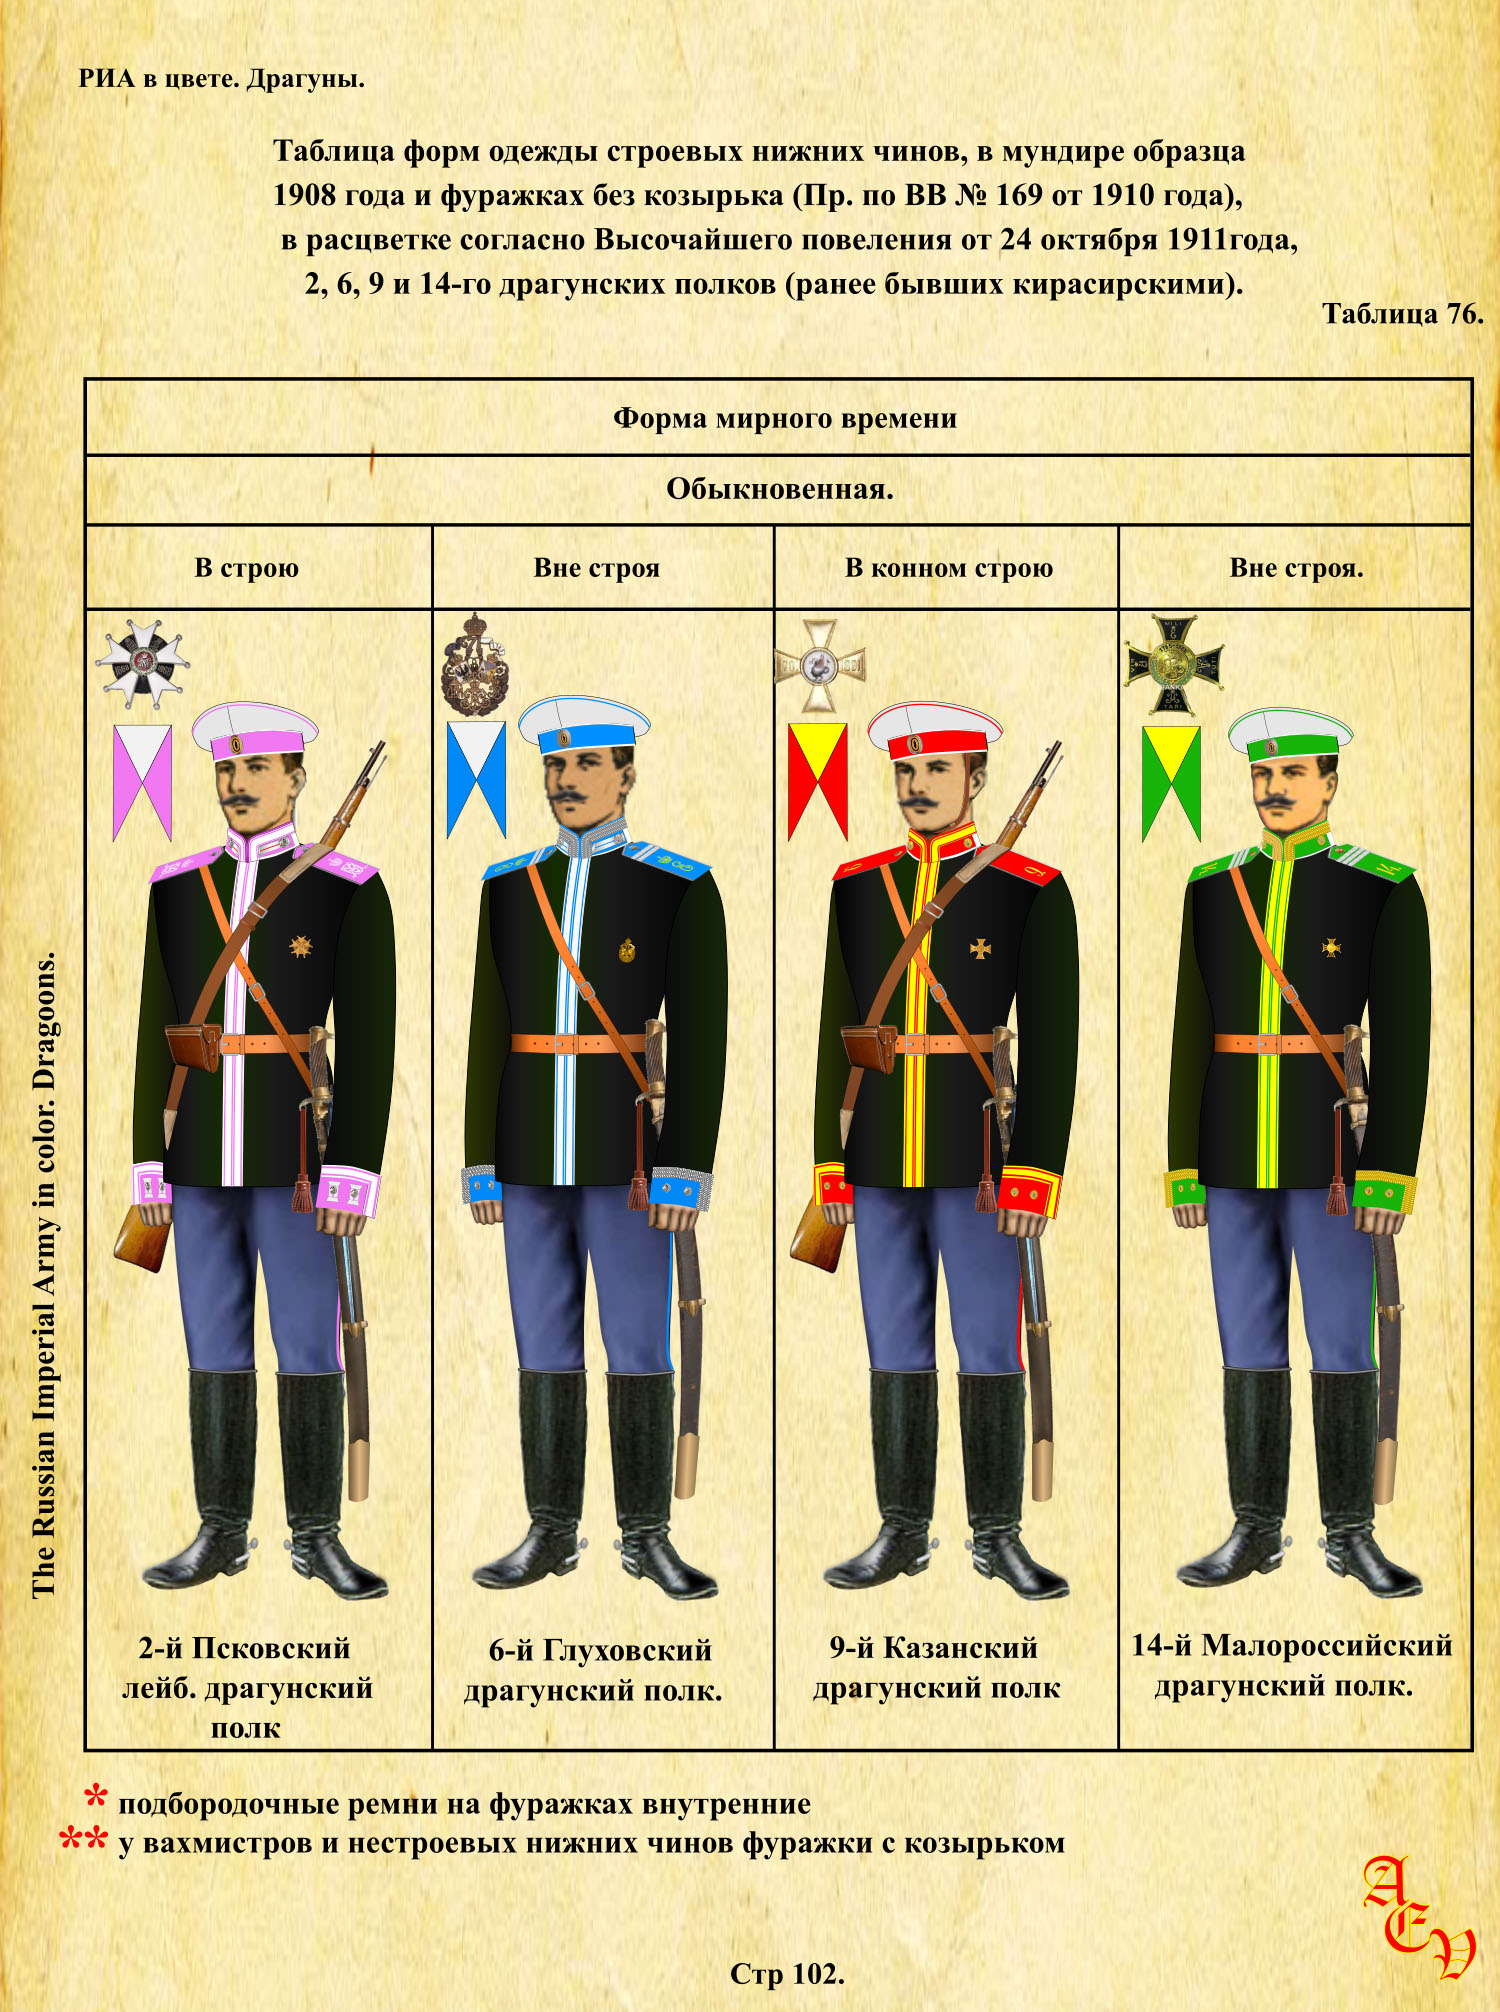 Парадная форма Драгунского полка